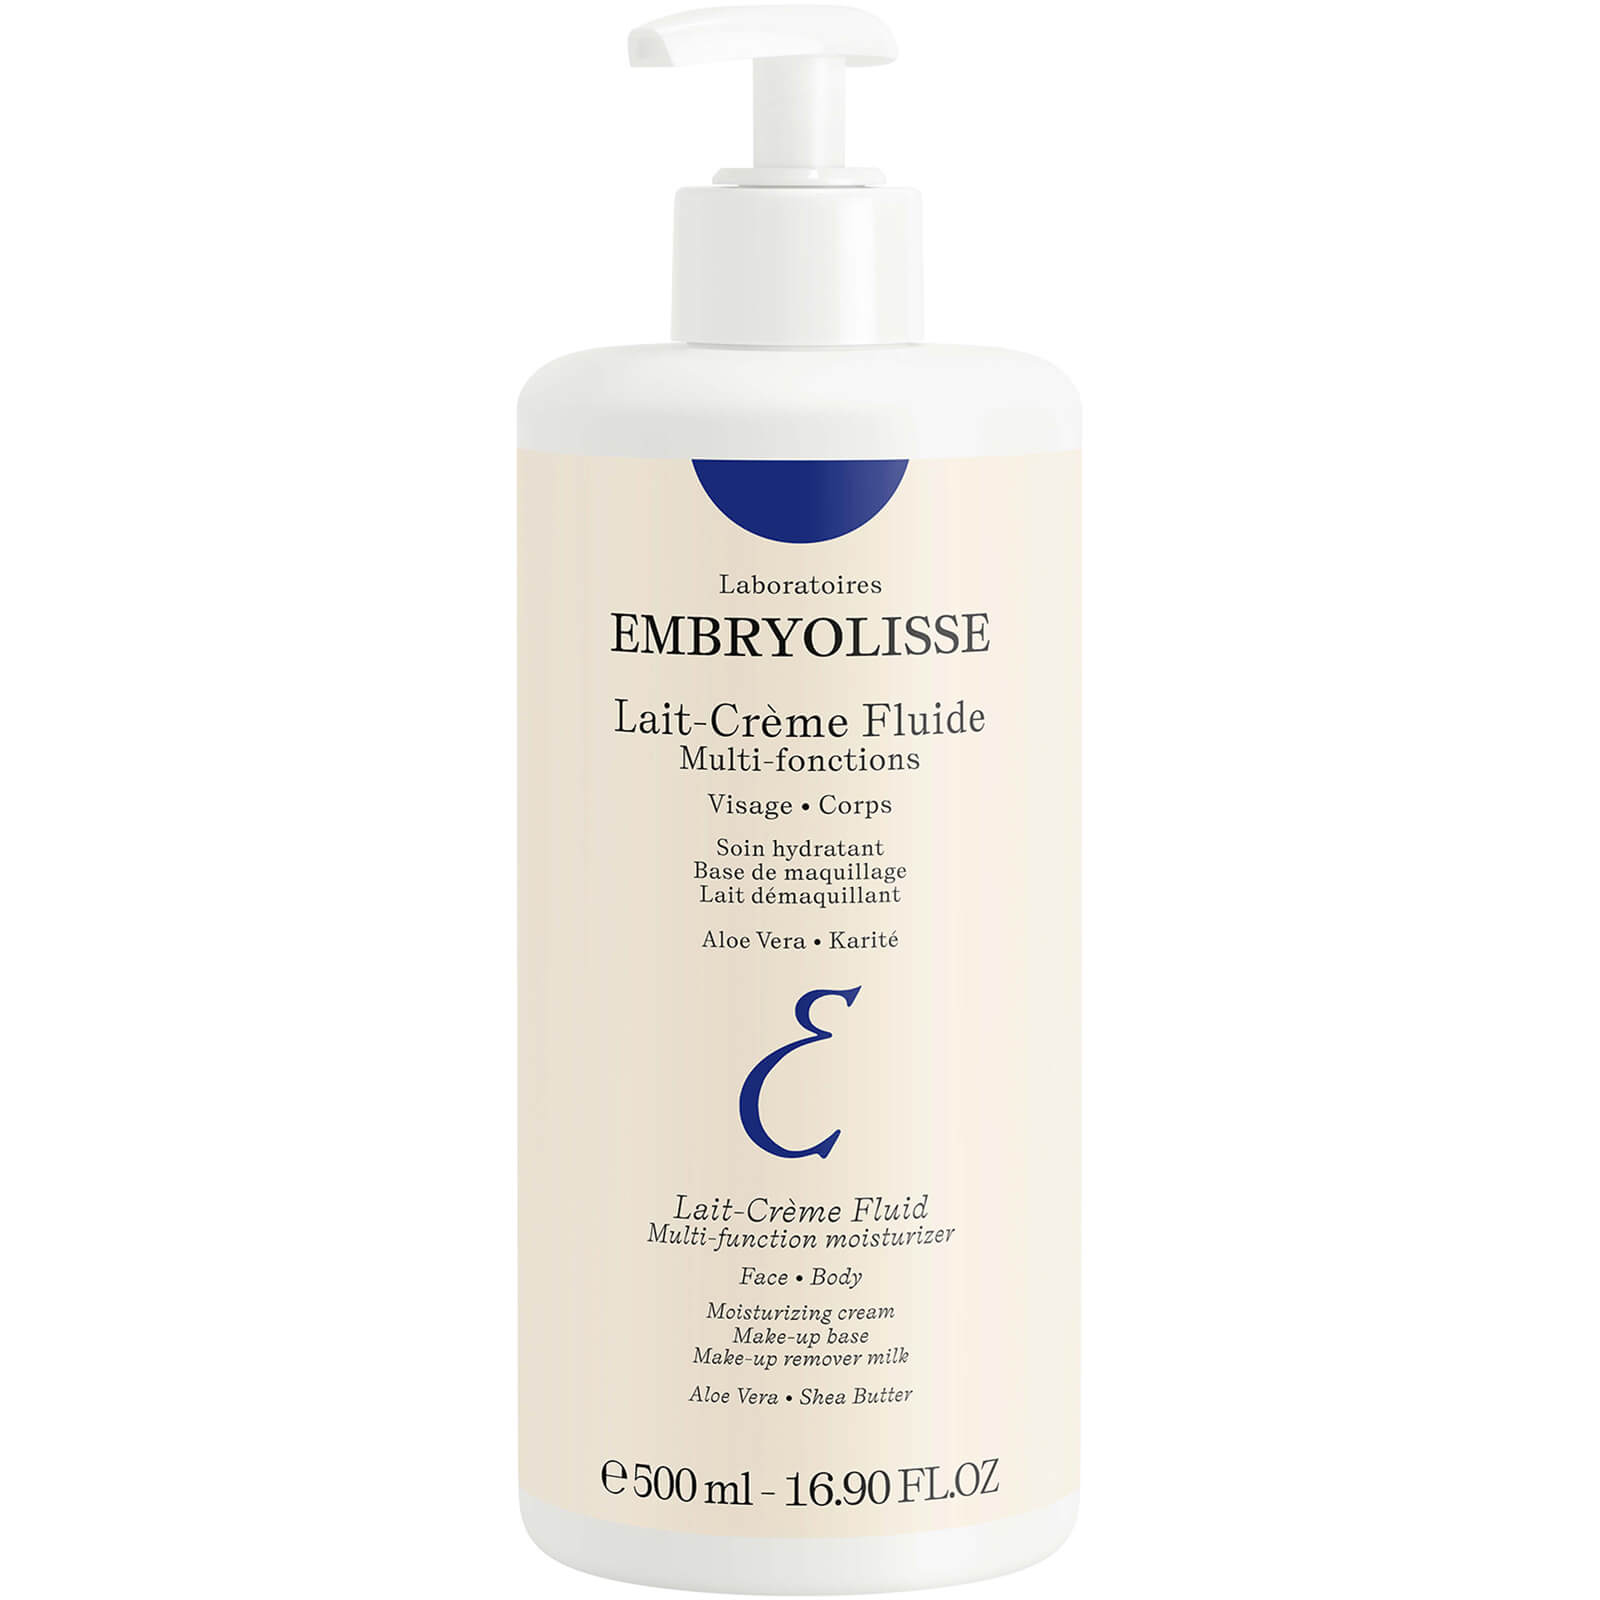 Embryolisse Lait-Creme Fluid (500ml)